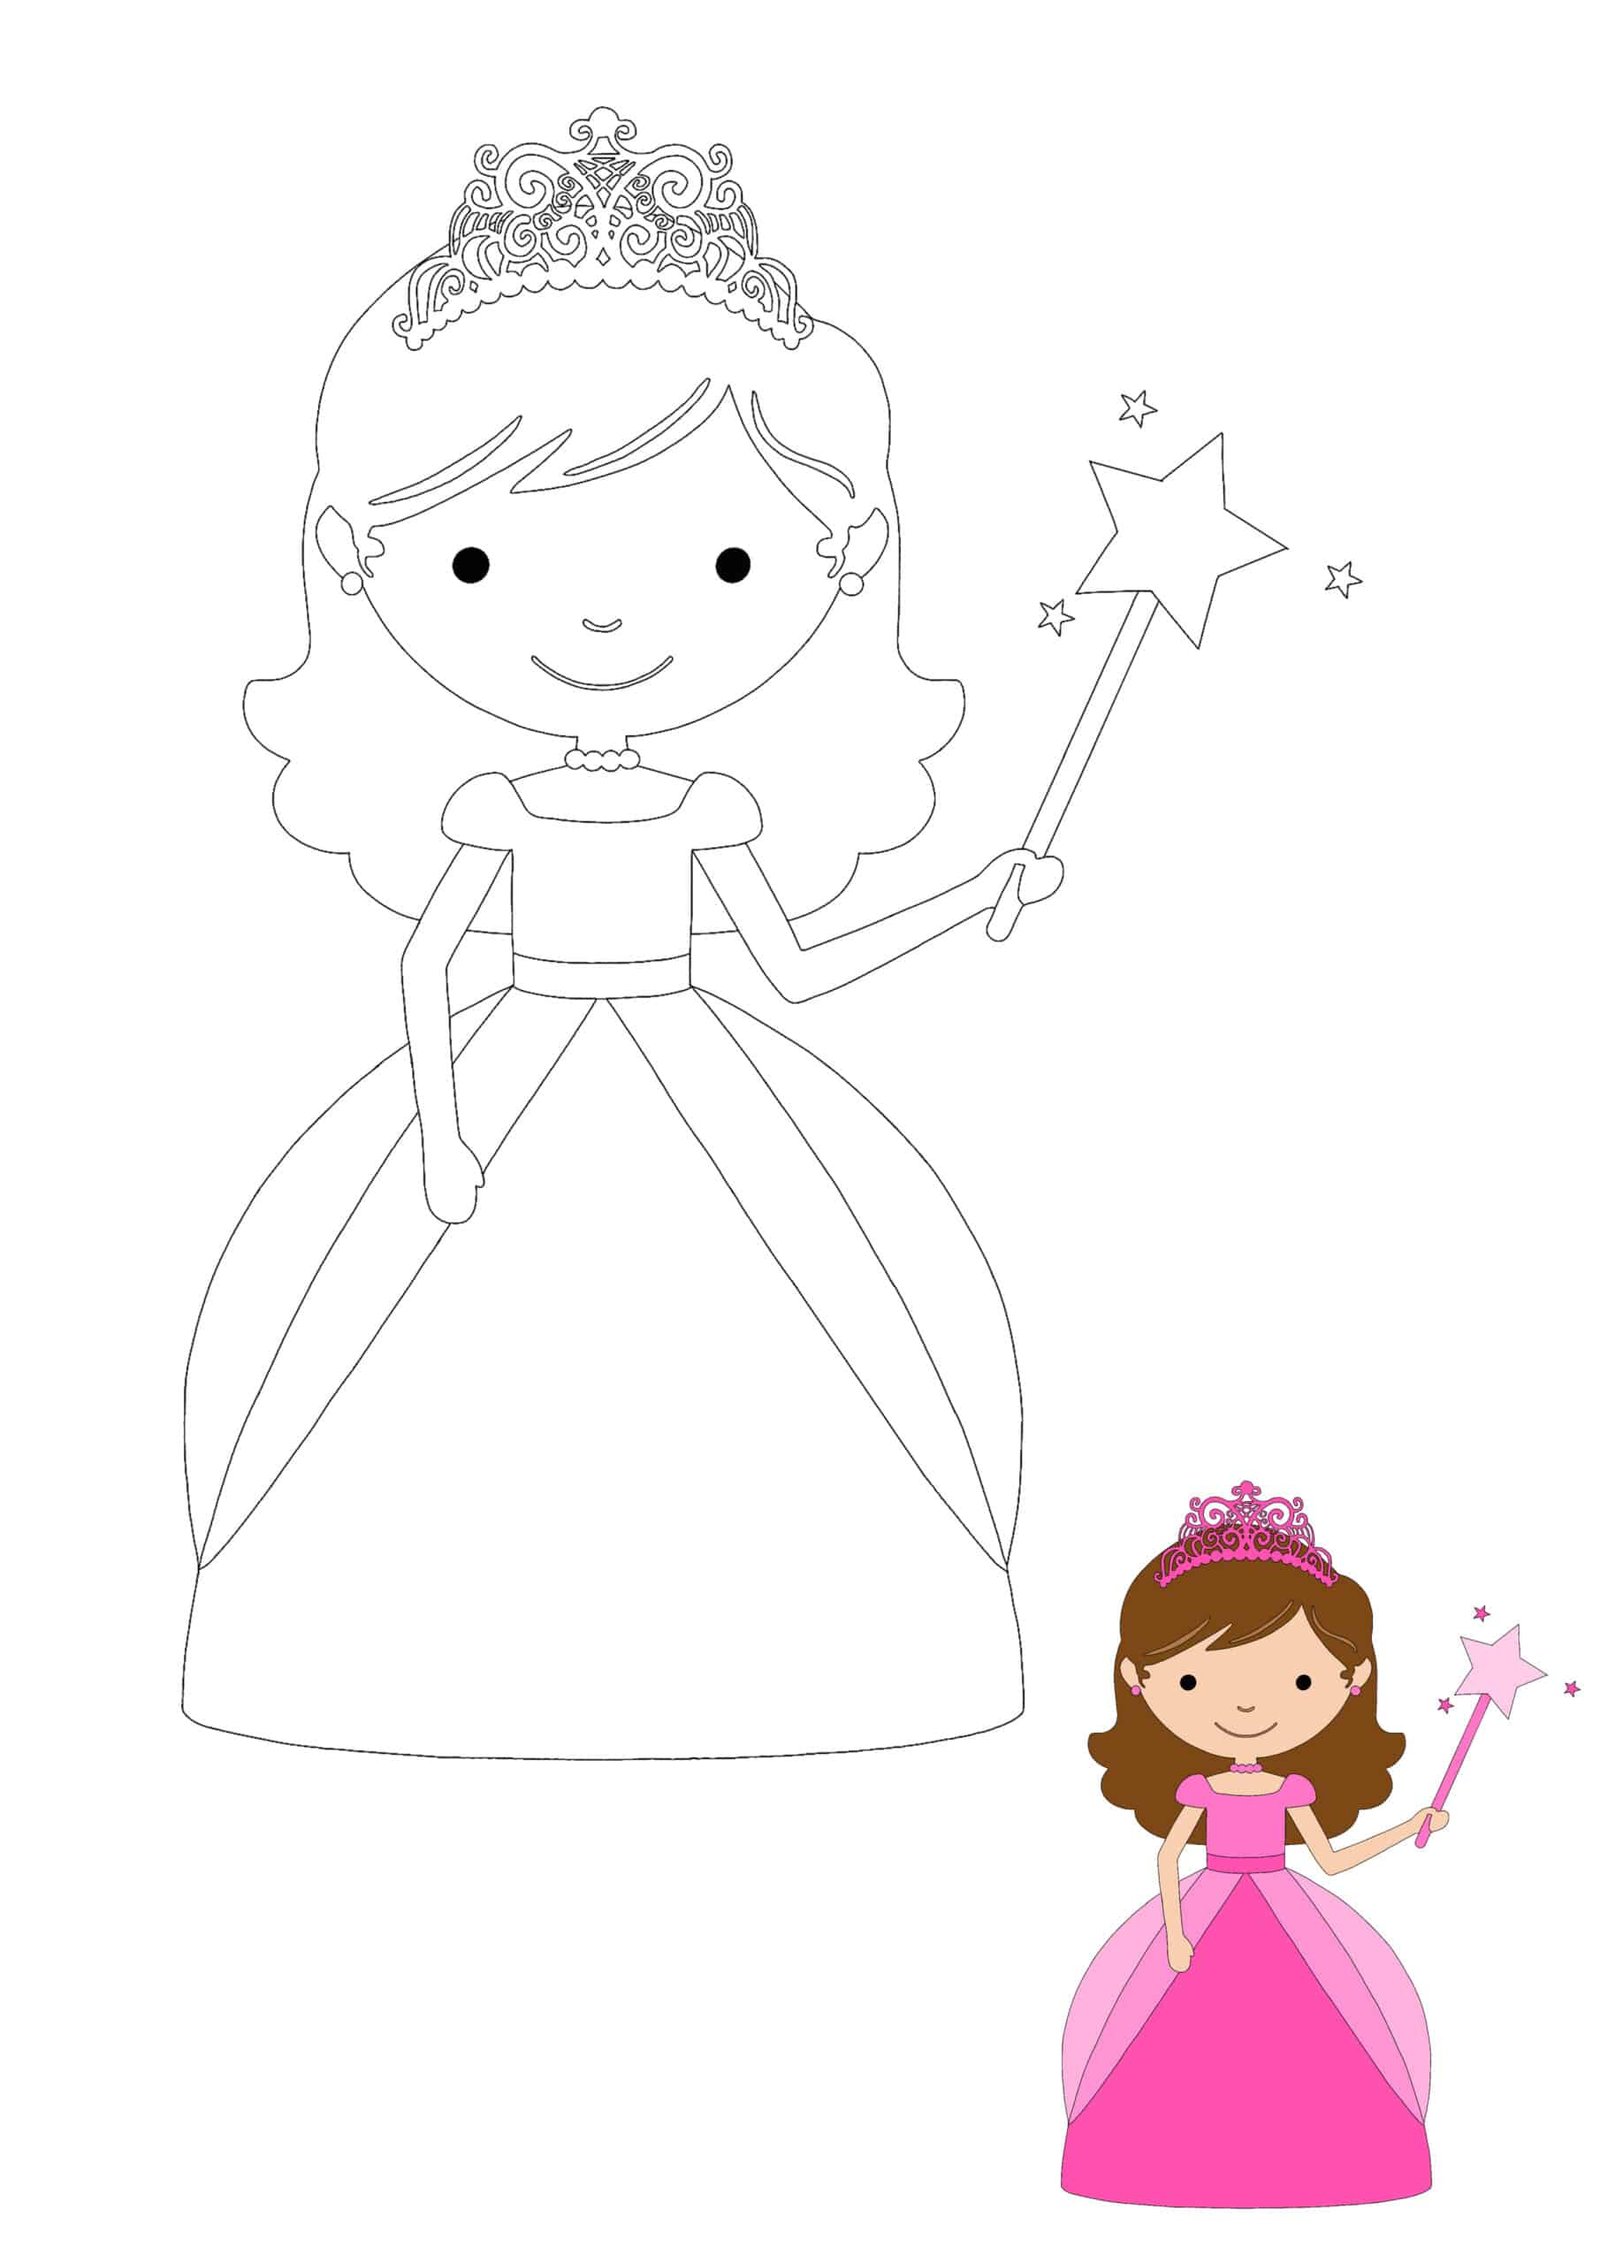 How to color princess